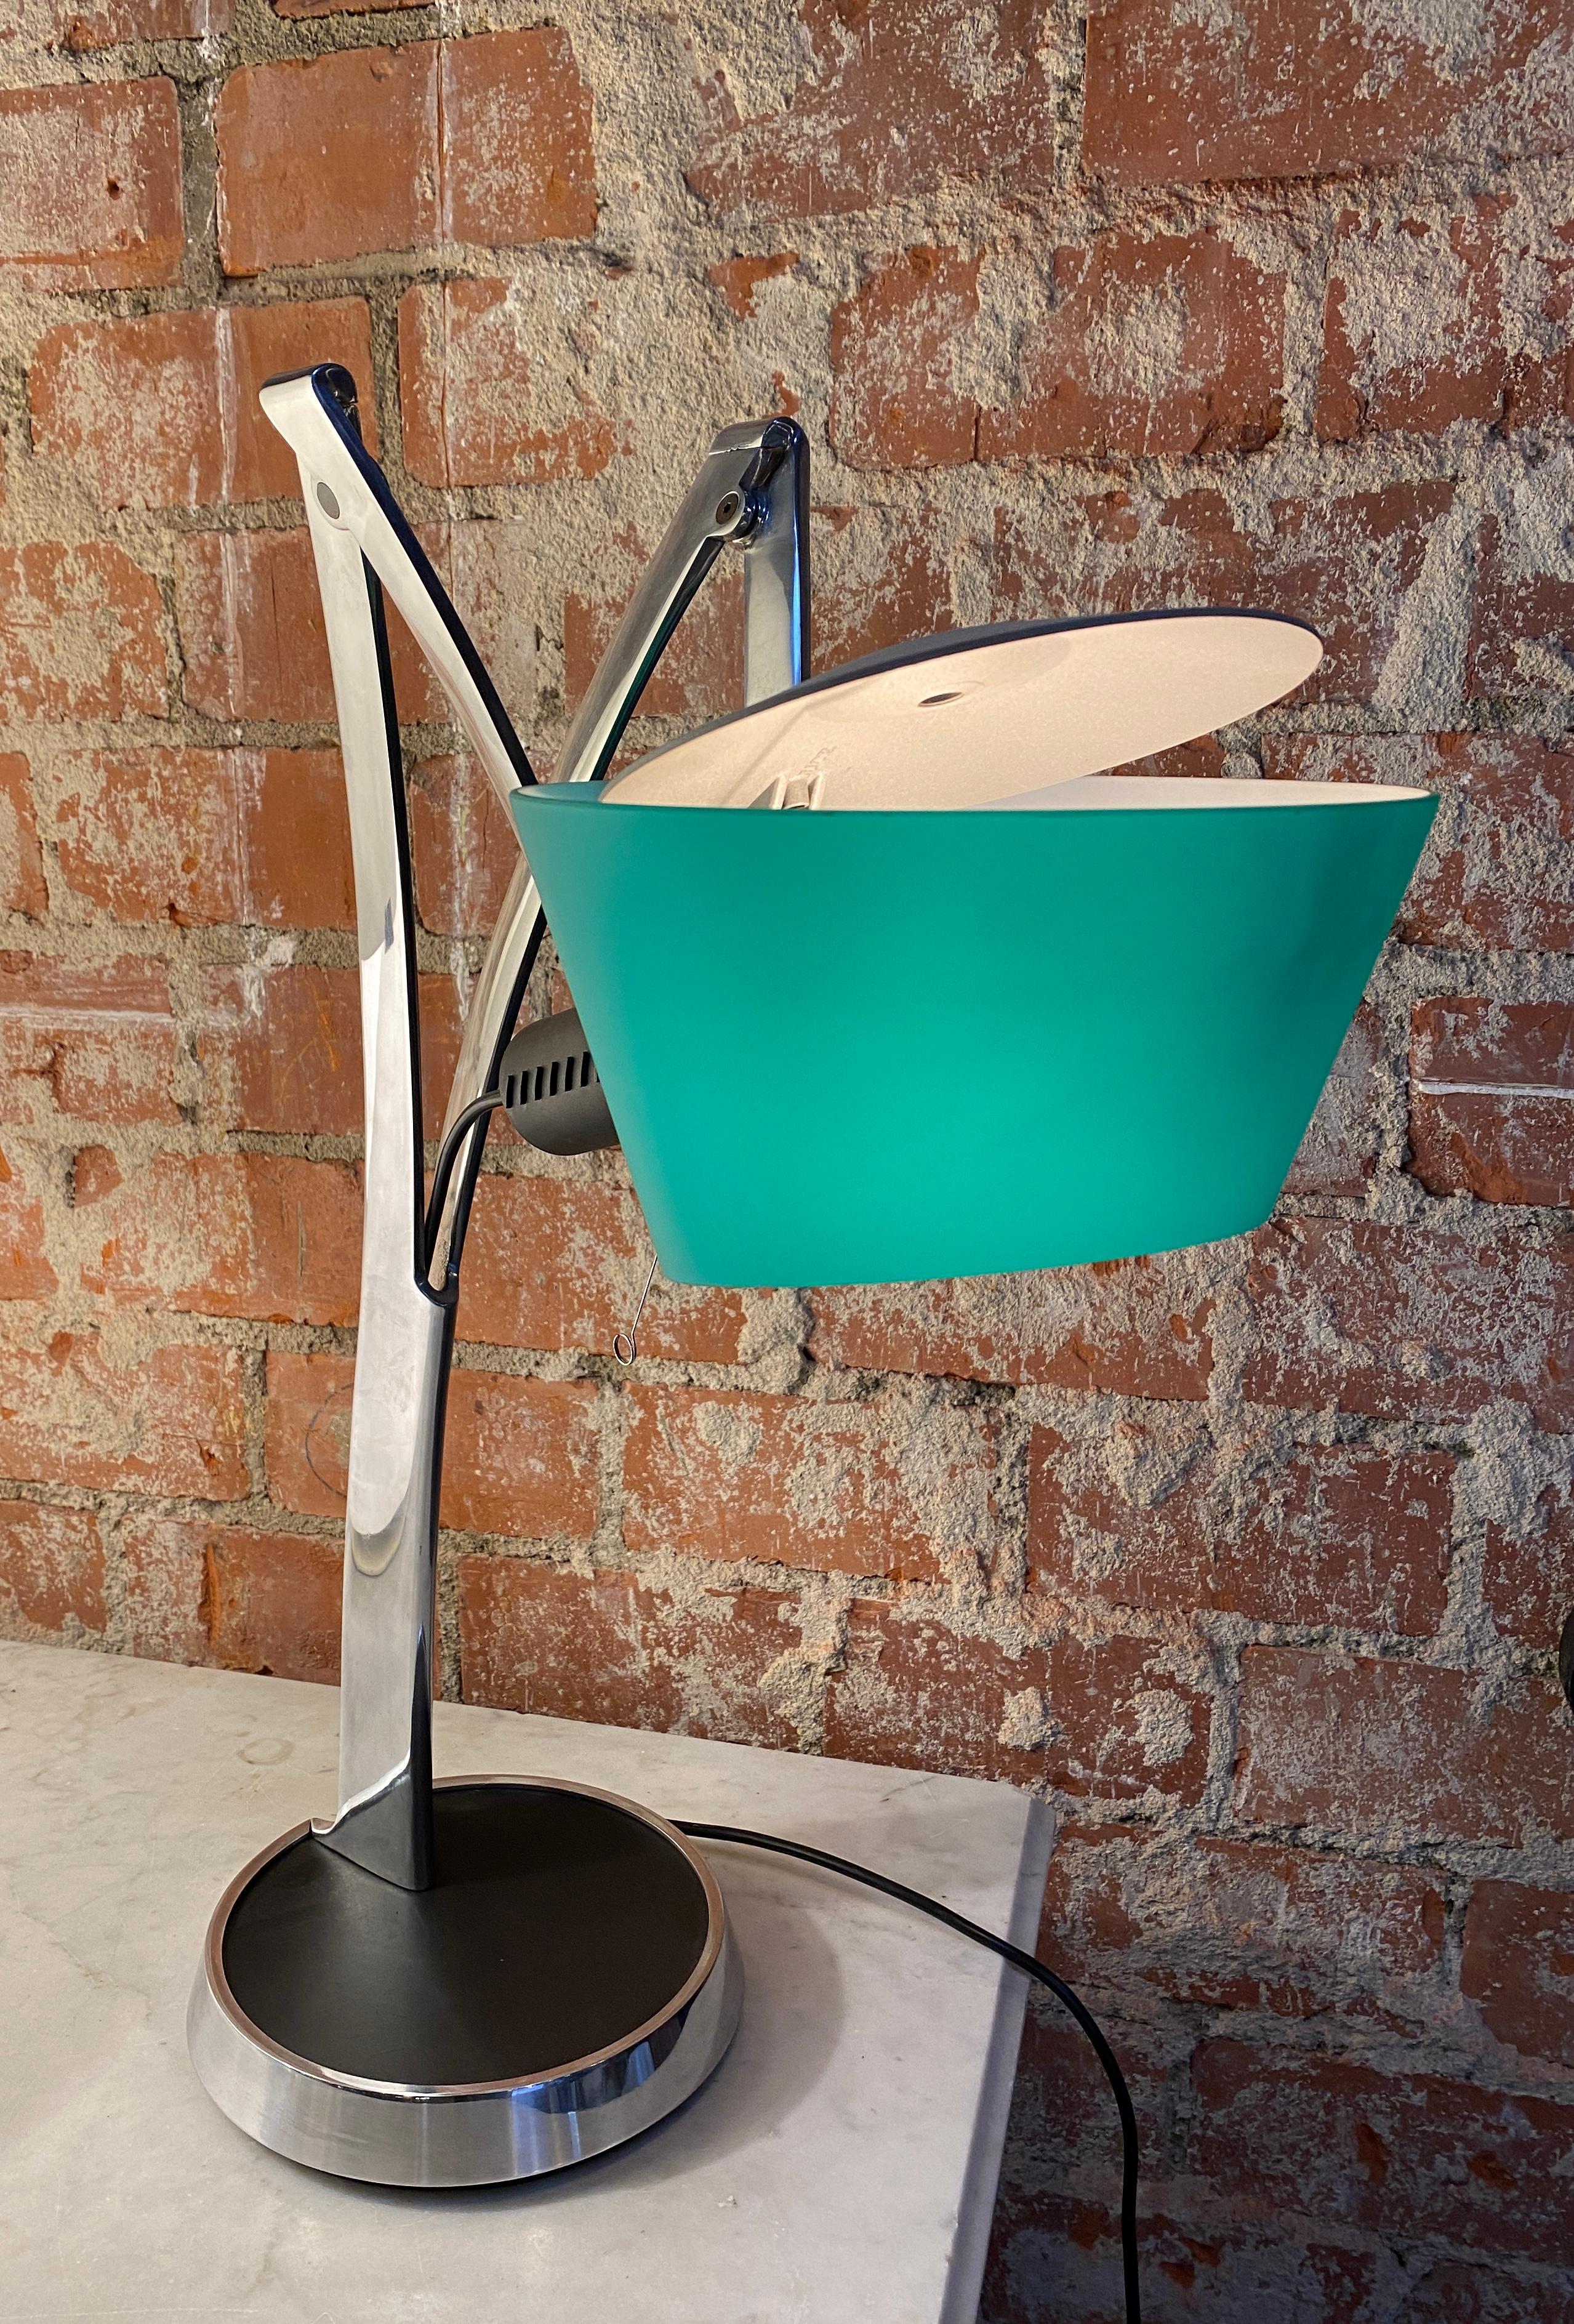 Lampe de table attribuée à Fontana Arte, c'est une lampe assez rare et en parfait état. L'interrupteur est à toucher, en touchant le petit fil métallique que l'on peut voir sur l'une des photos et dans la vidéo. Tant le verre vert qui reflète une